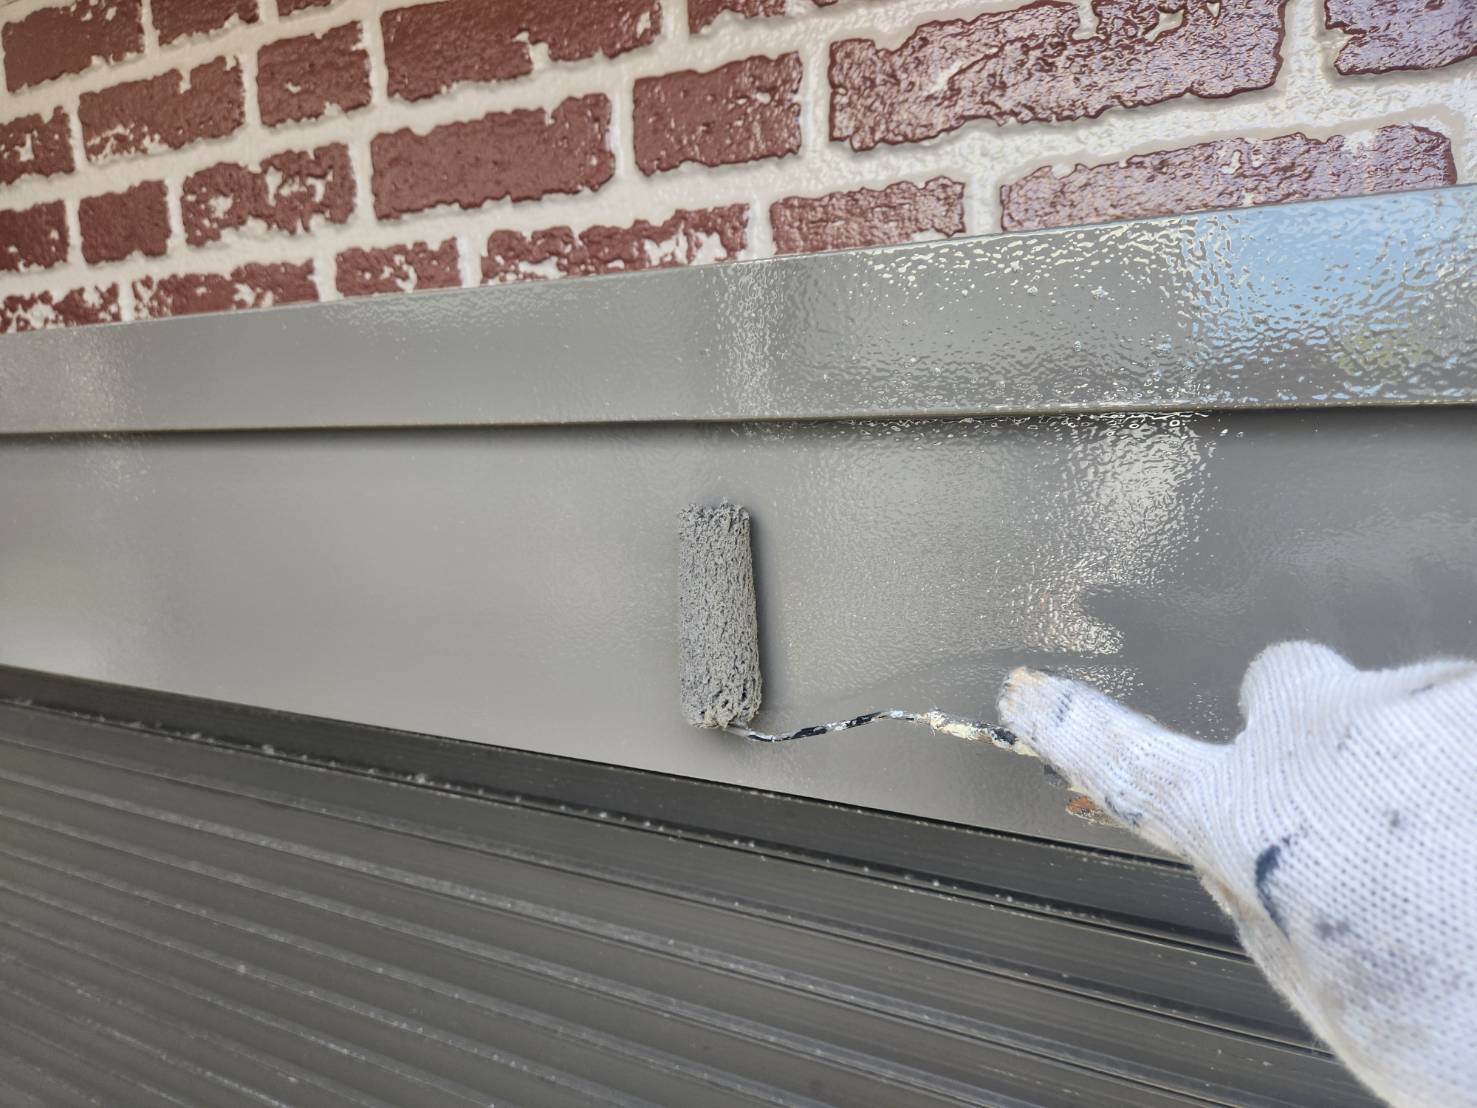 福岡県福岡市南区三宅のI様邸でプレミアムペイントの市場最高級シリコン樹脂を含有する水性ピュアピュアシリコンを使用した高品質な外壁塗装工事を行いました。5/31完成です。【HPより】